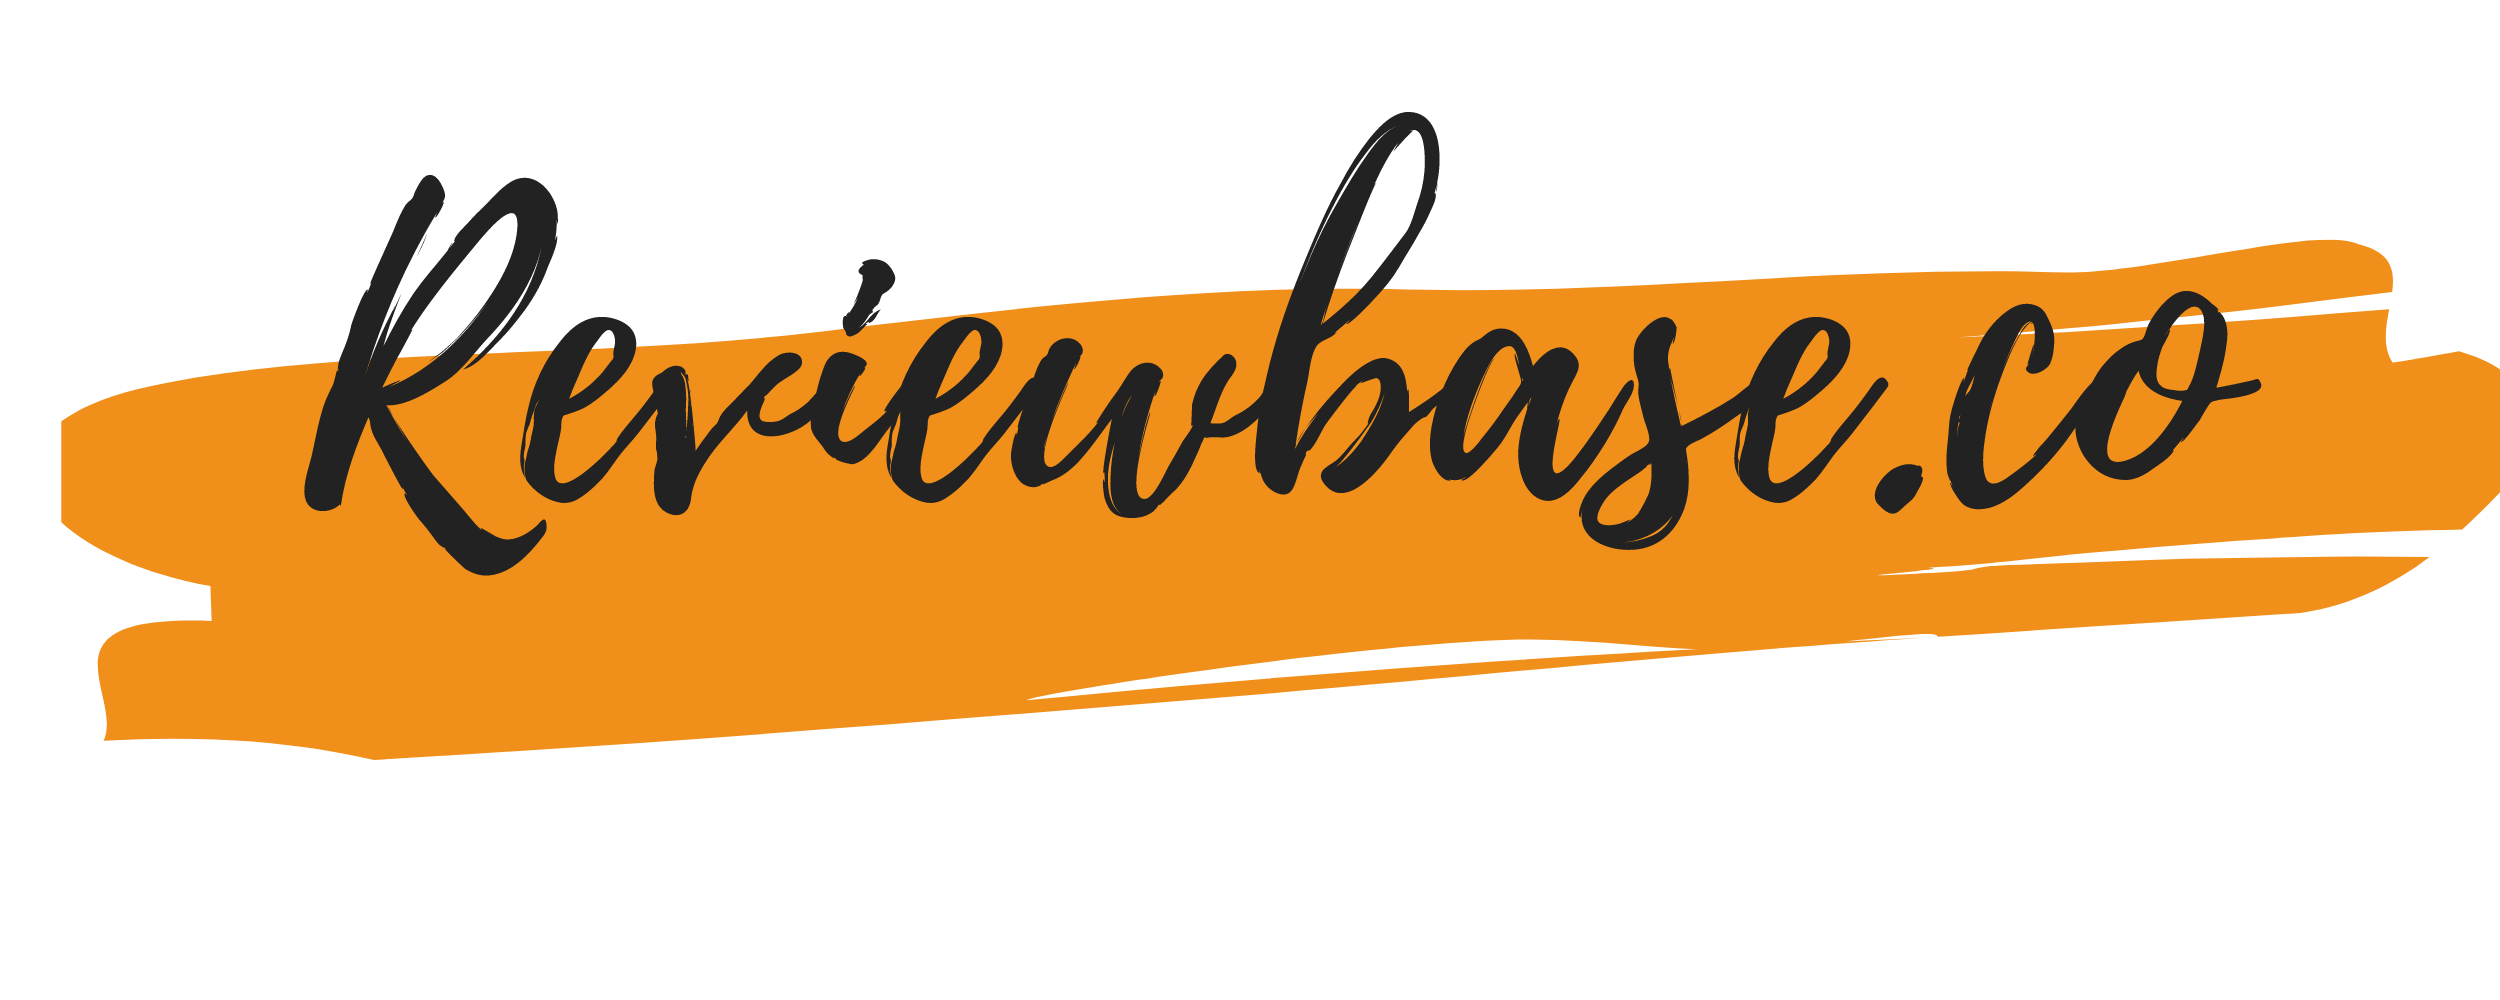 reviewbase.co logo